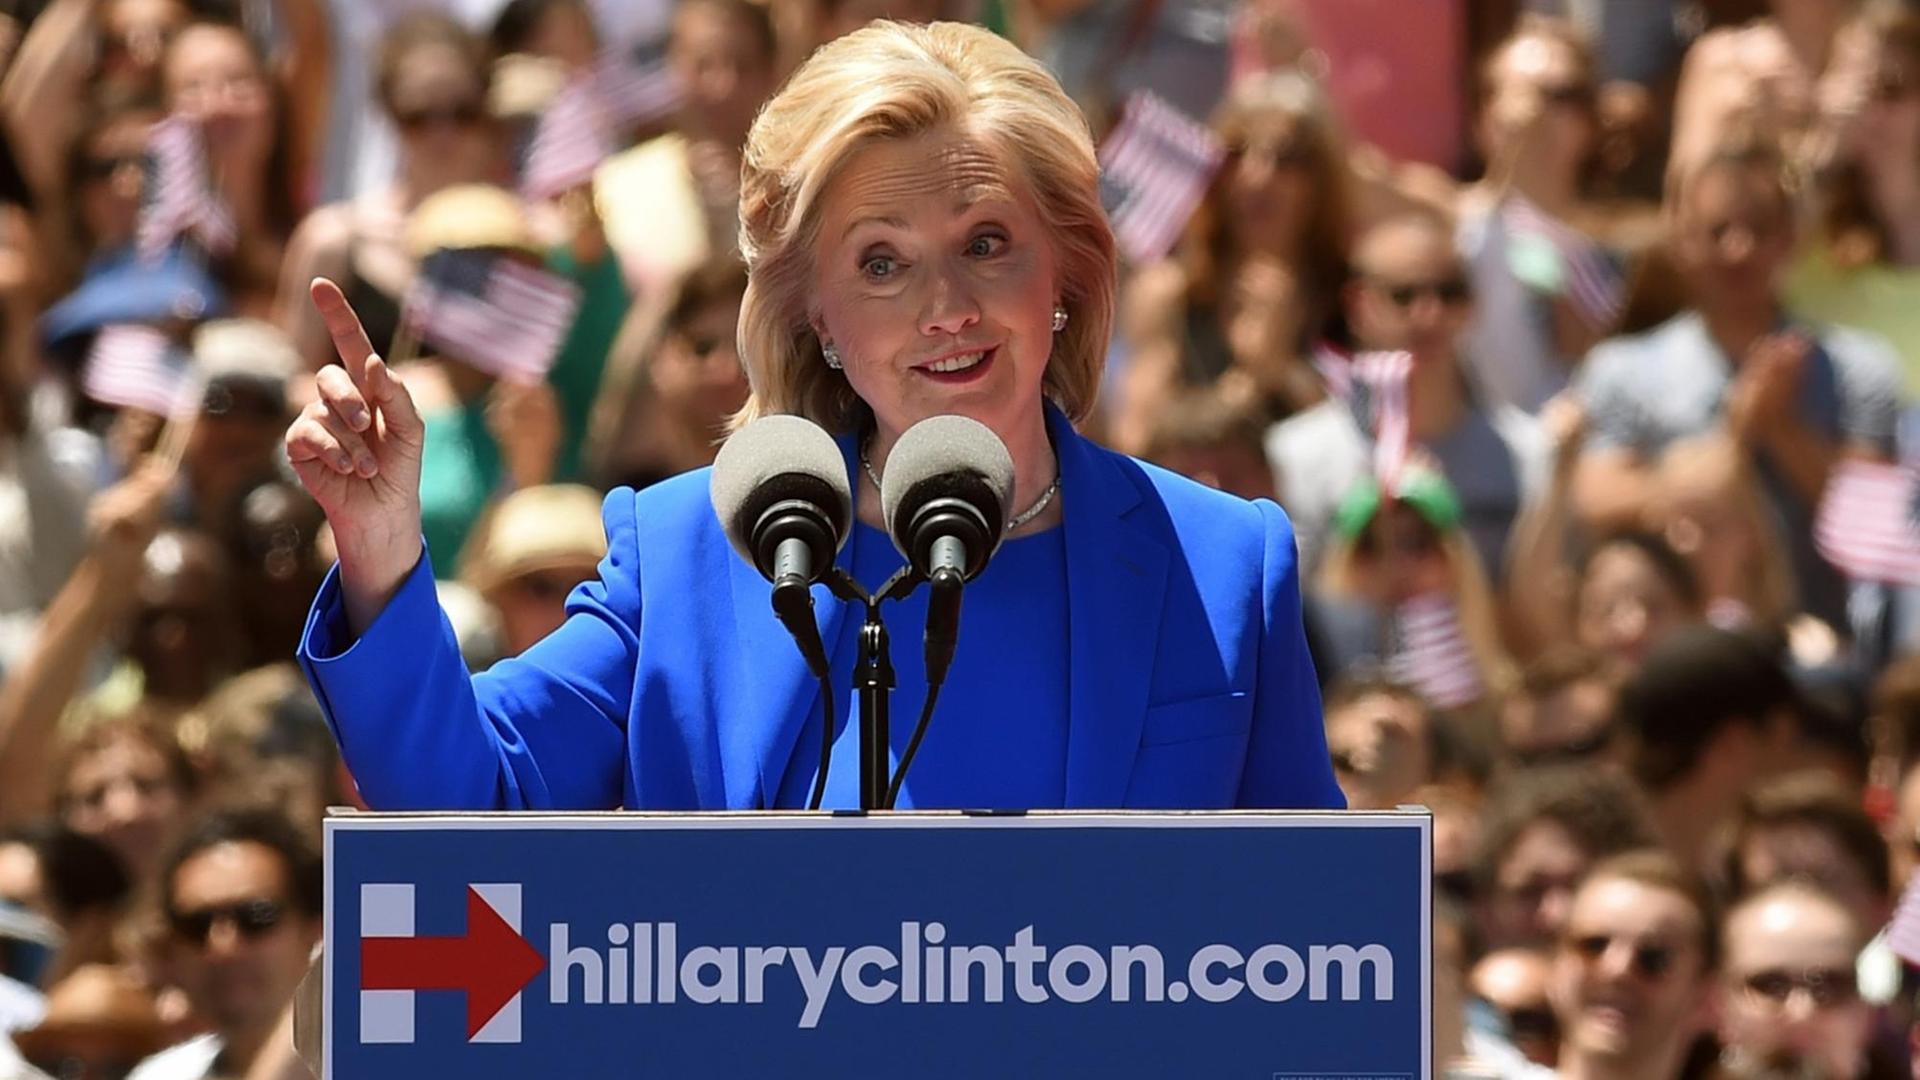 Die US-Präsidentschaftskandidatin Hillary Clinton während ihrer ersten großen Wahlkampfrede auf Roosevelt Island in New York